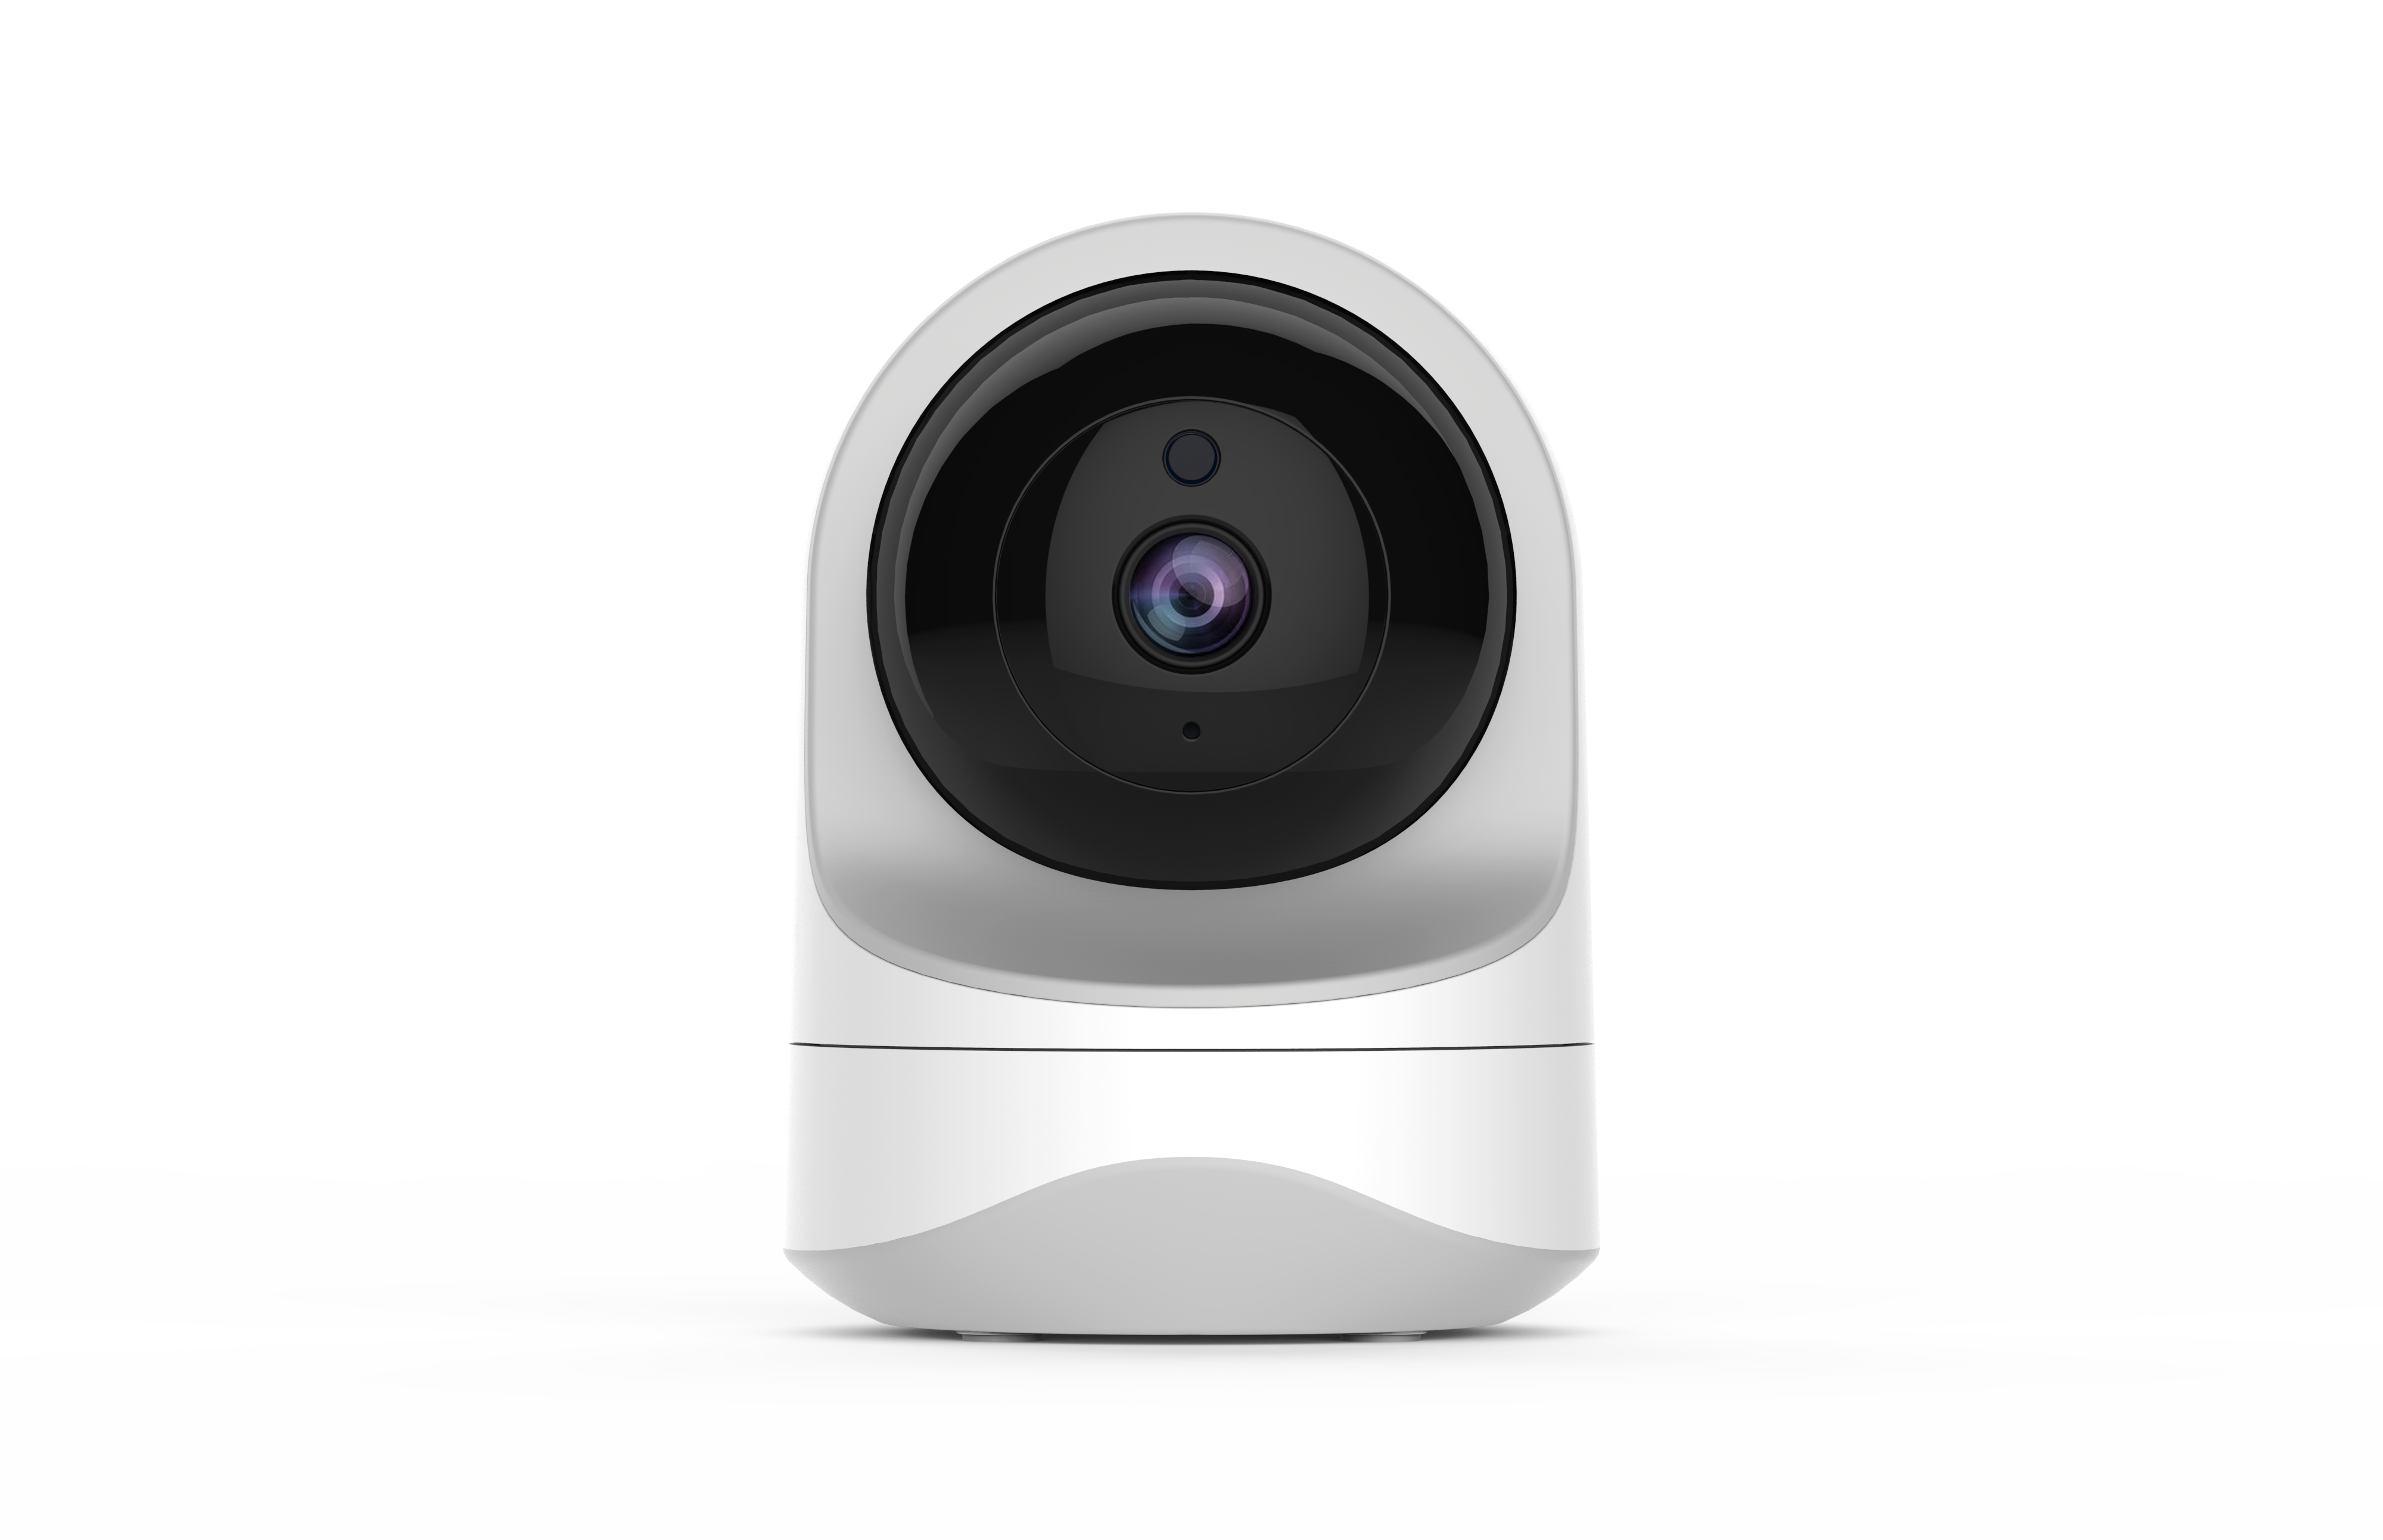 Home surveillance camera options